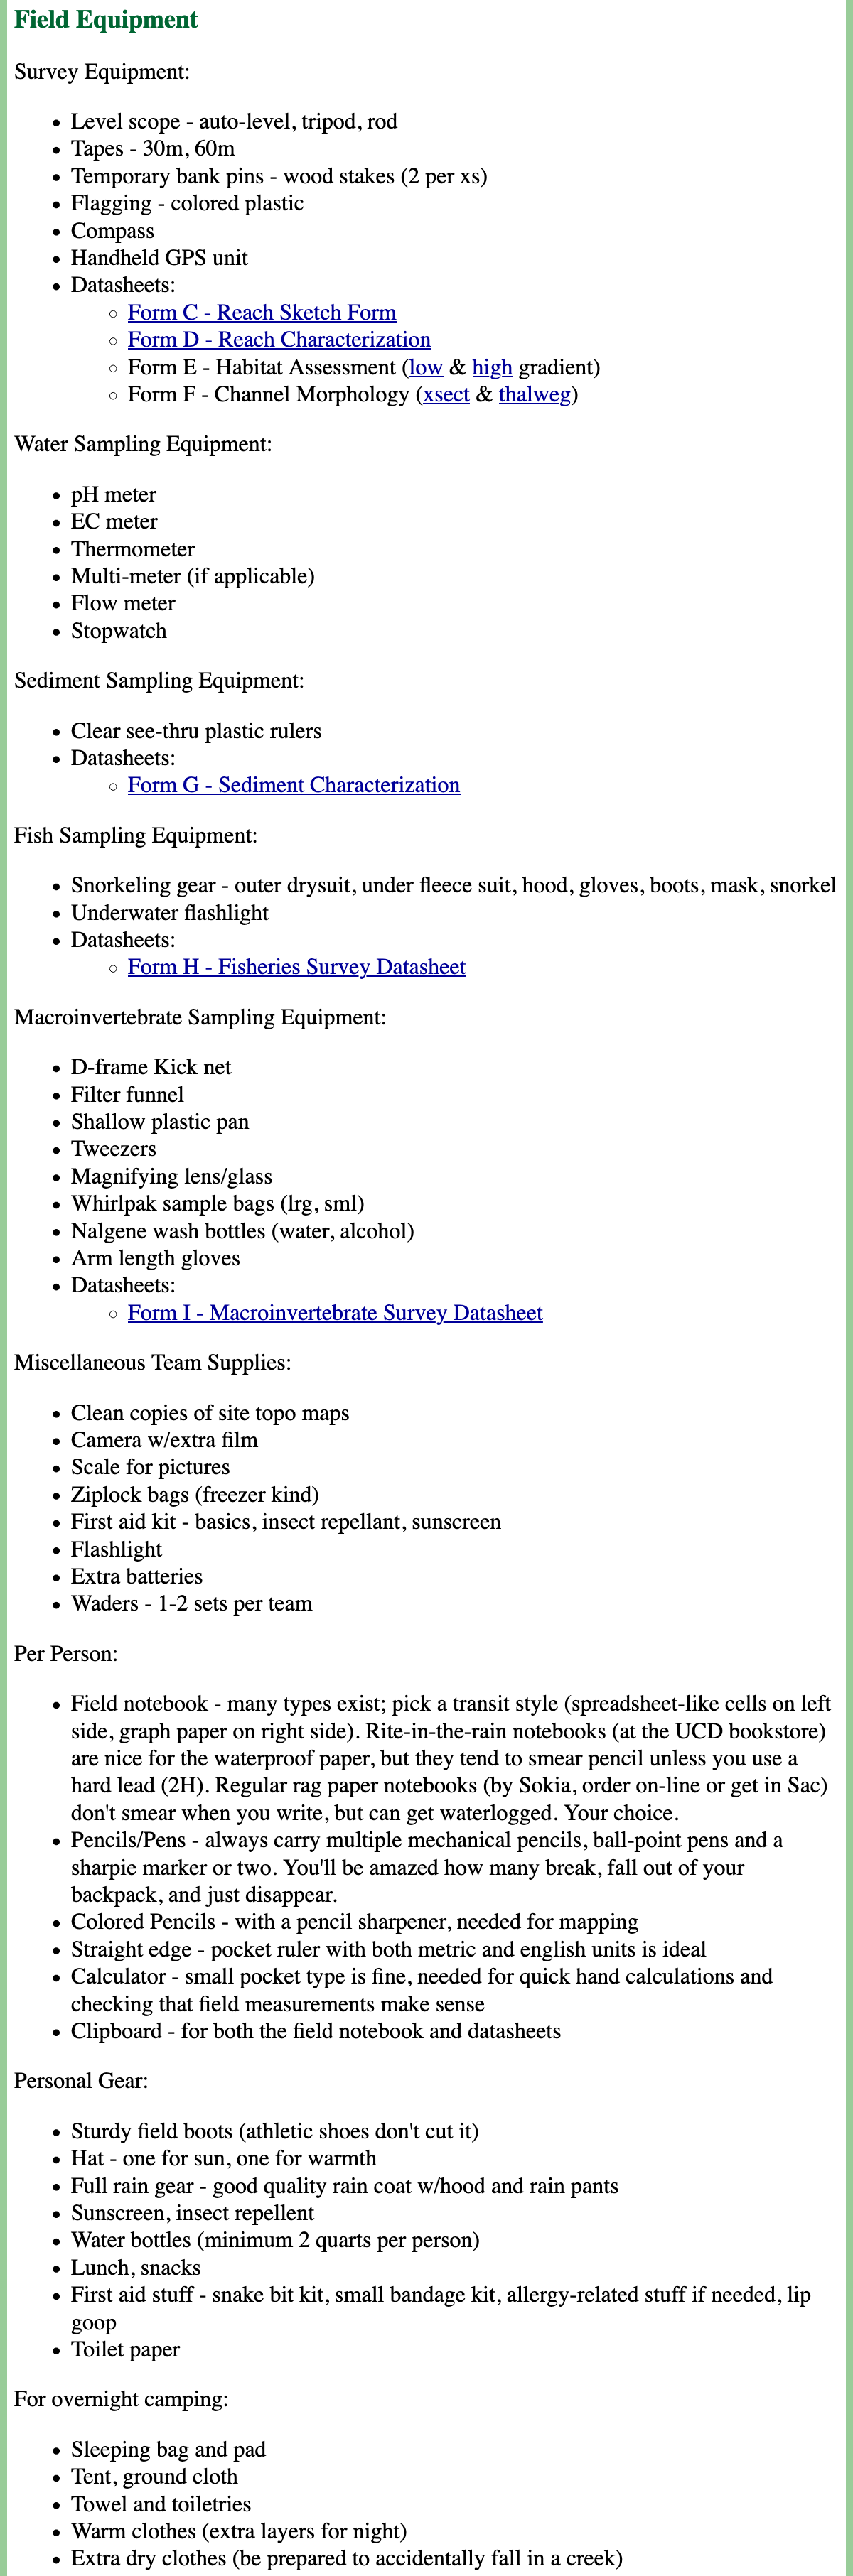 Equipment List for the Scott River